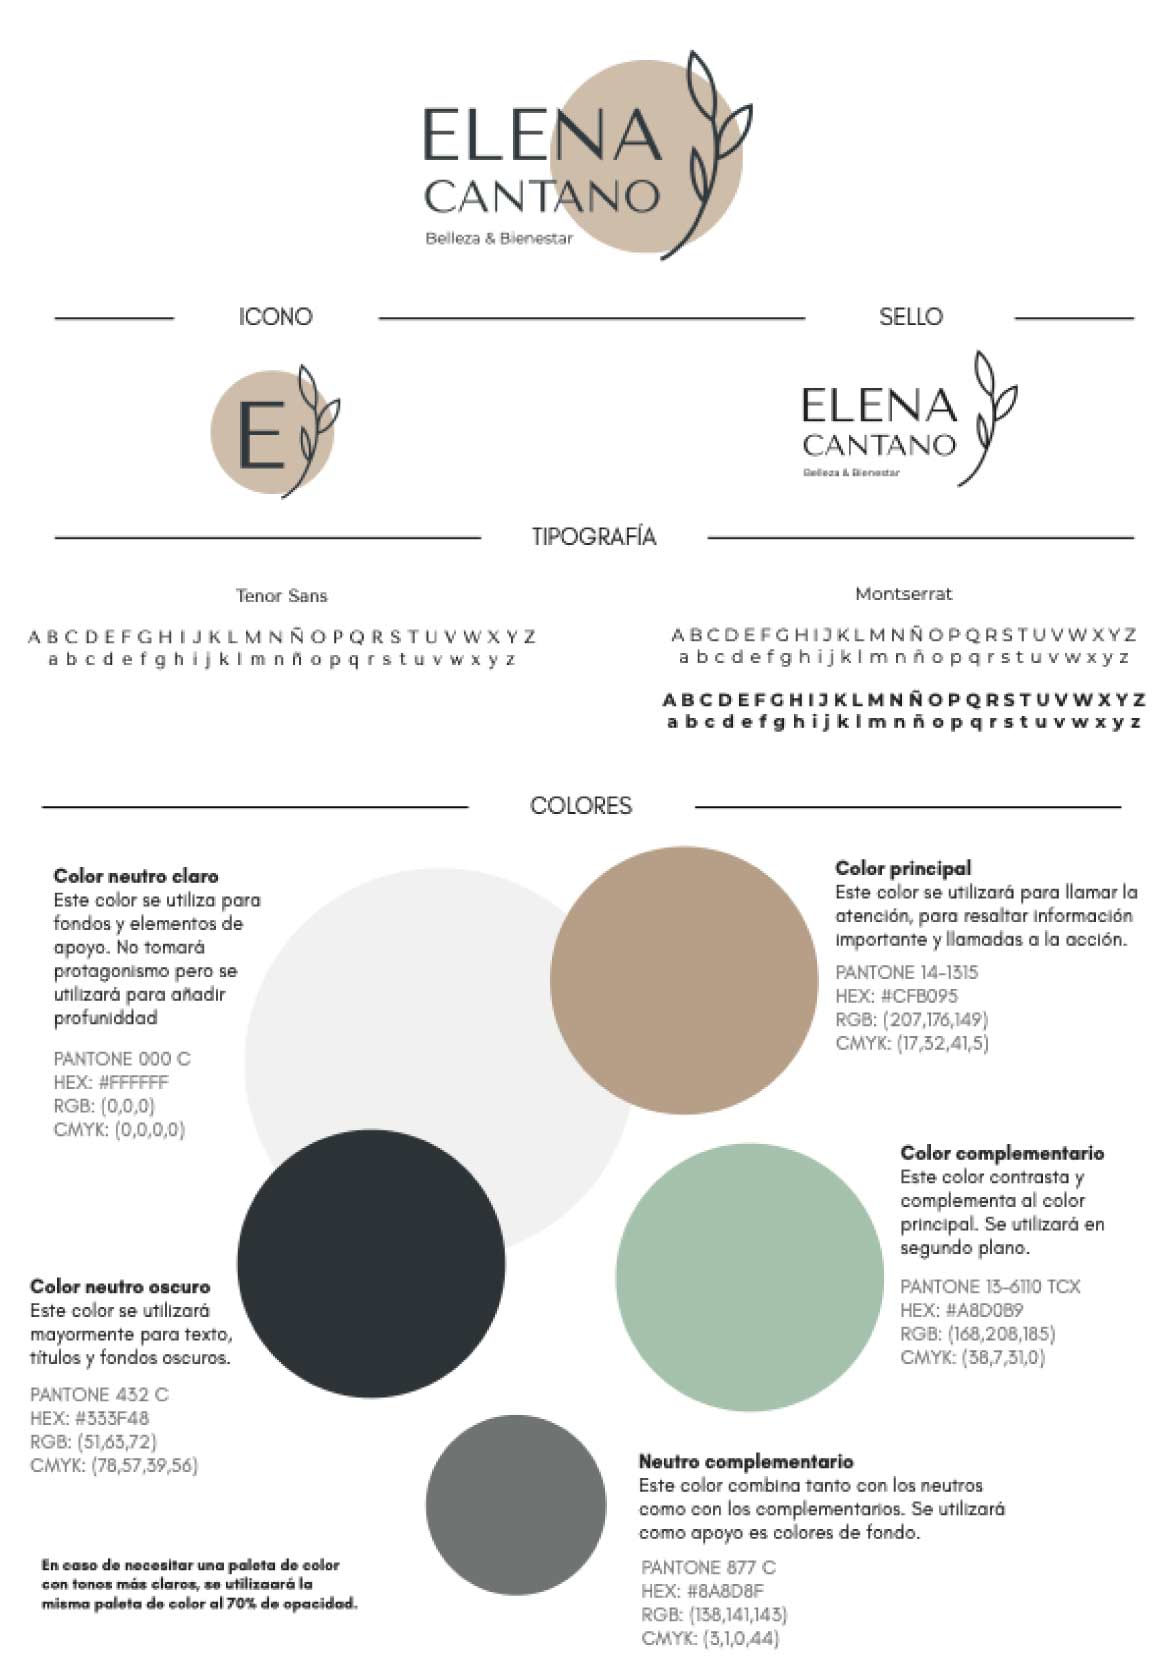 Paleta de Colores utilizada en el Proyecto Elena Cantano